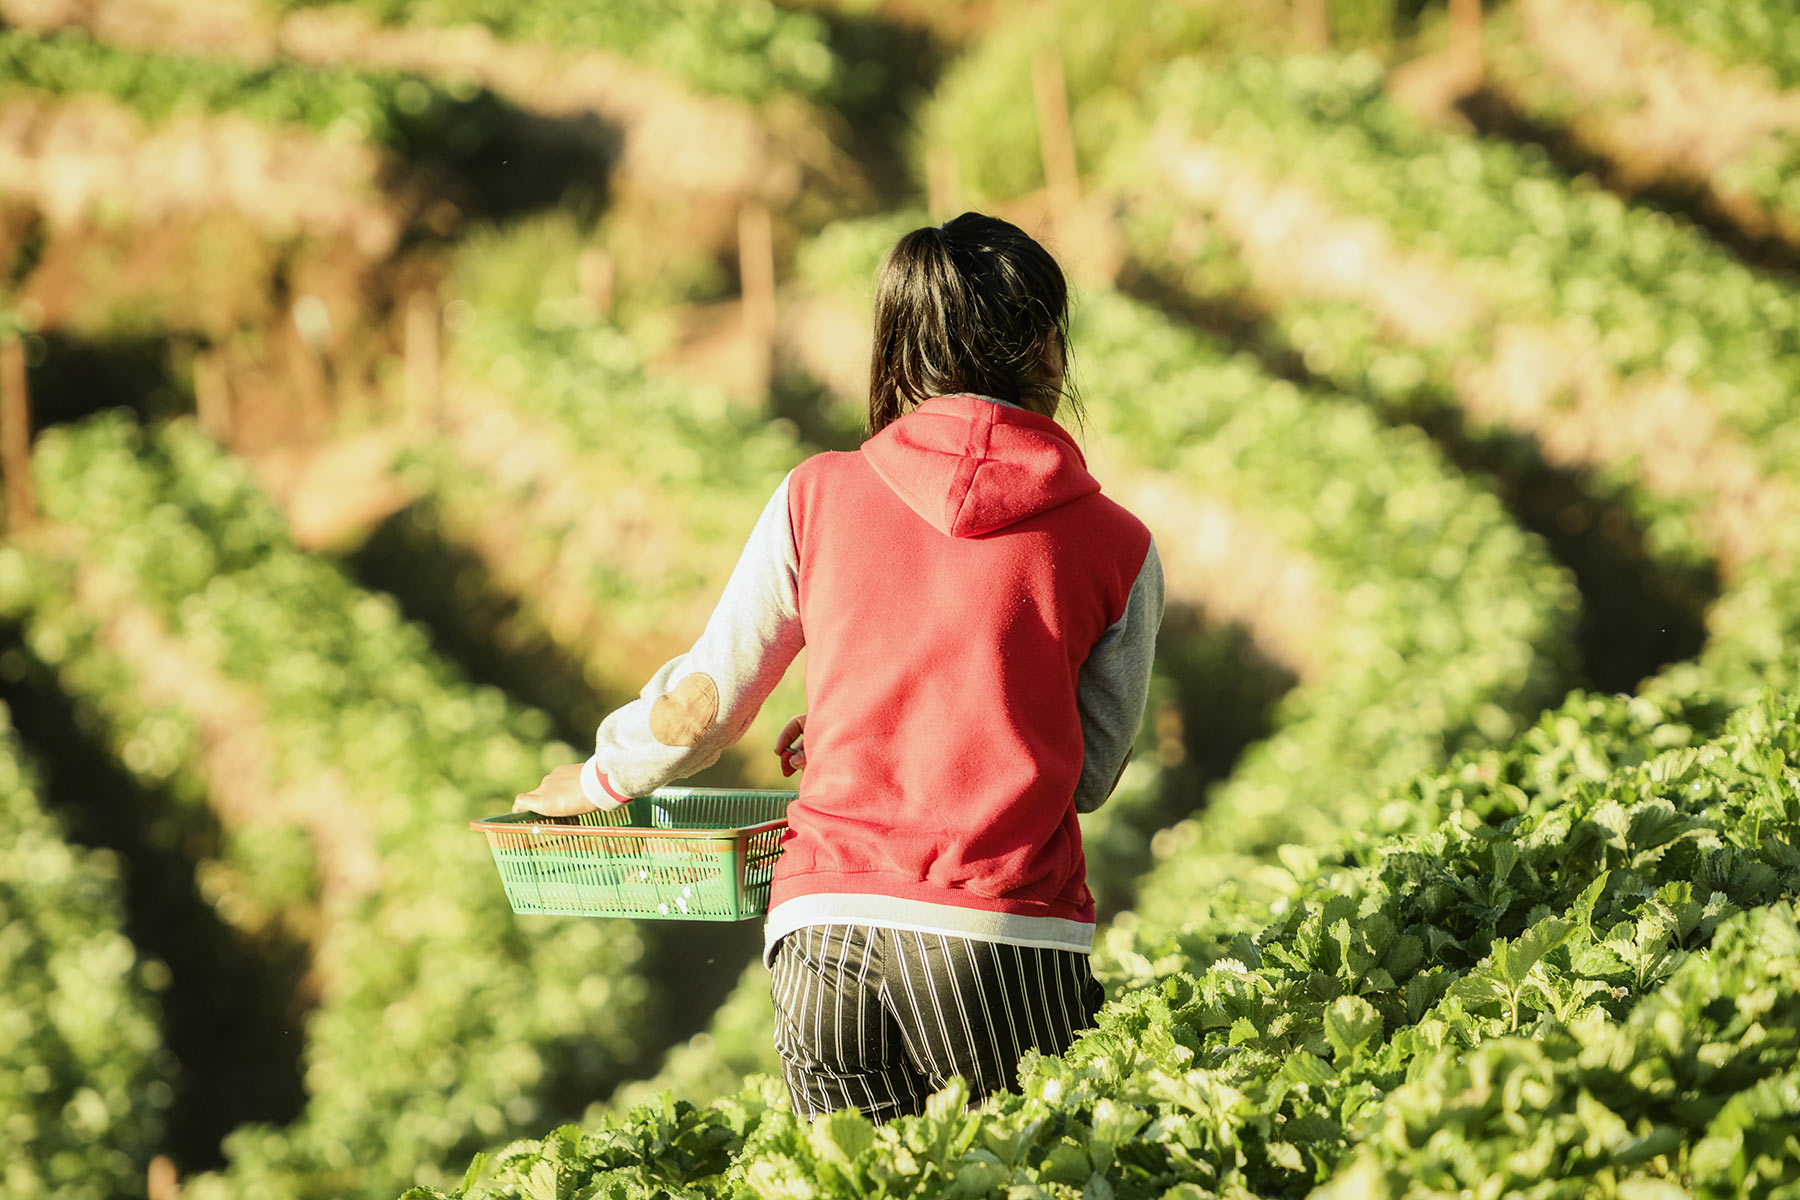 A worker walks through a strawberry farm